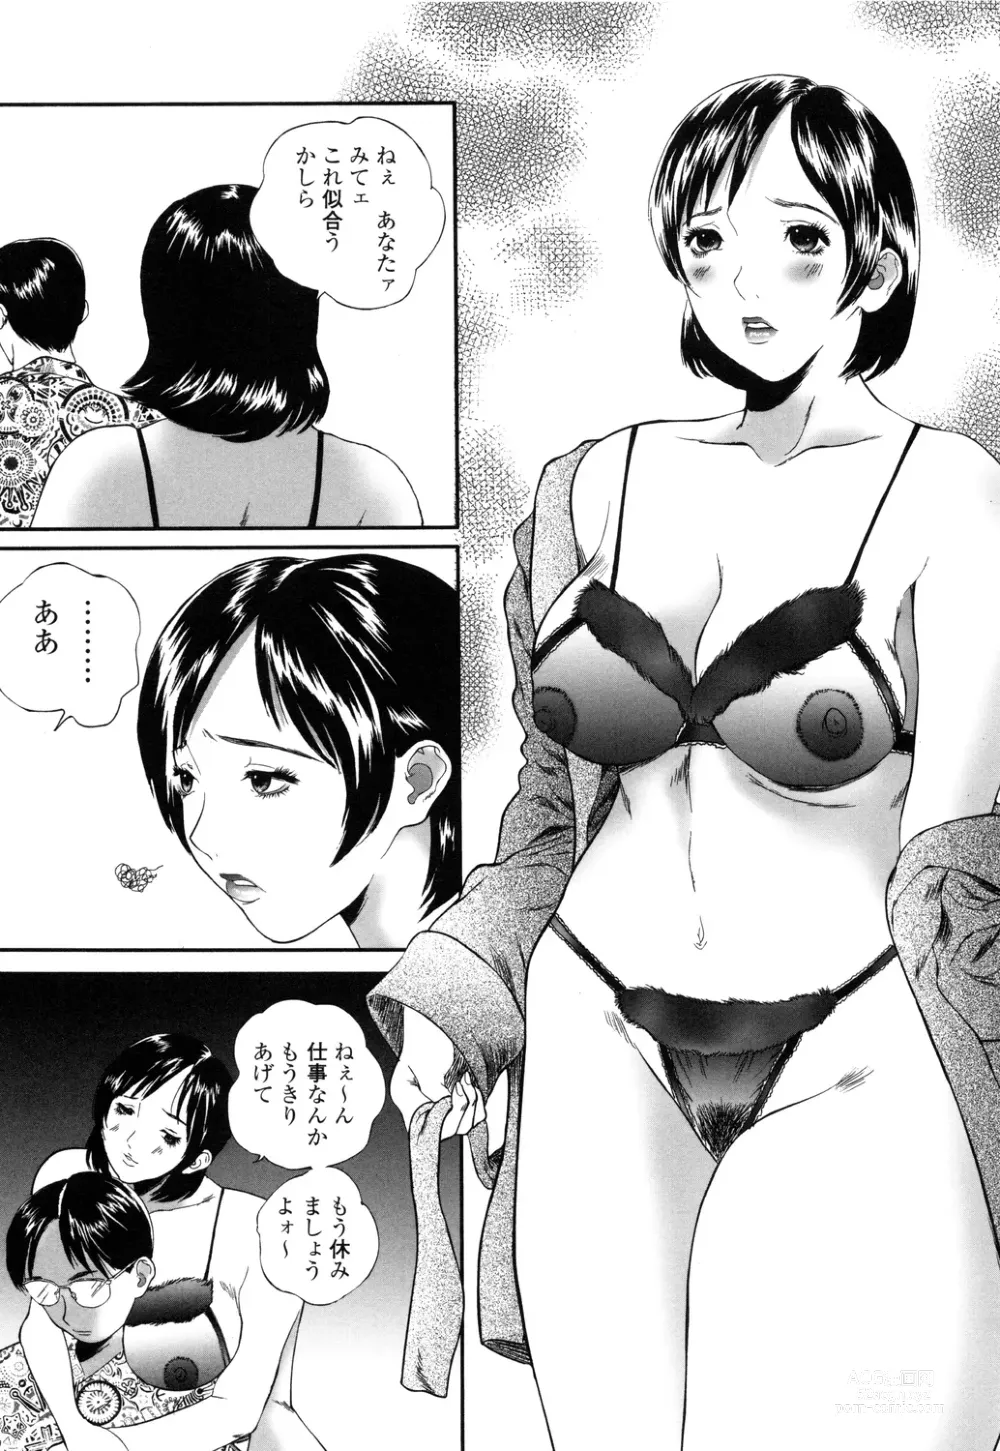 Page 5 of manga Apart zuma Ryouko